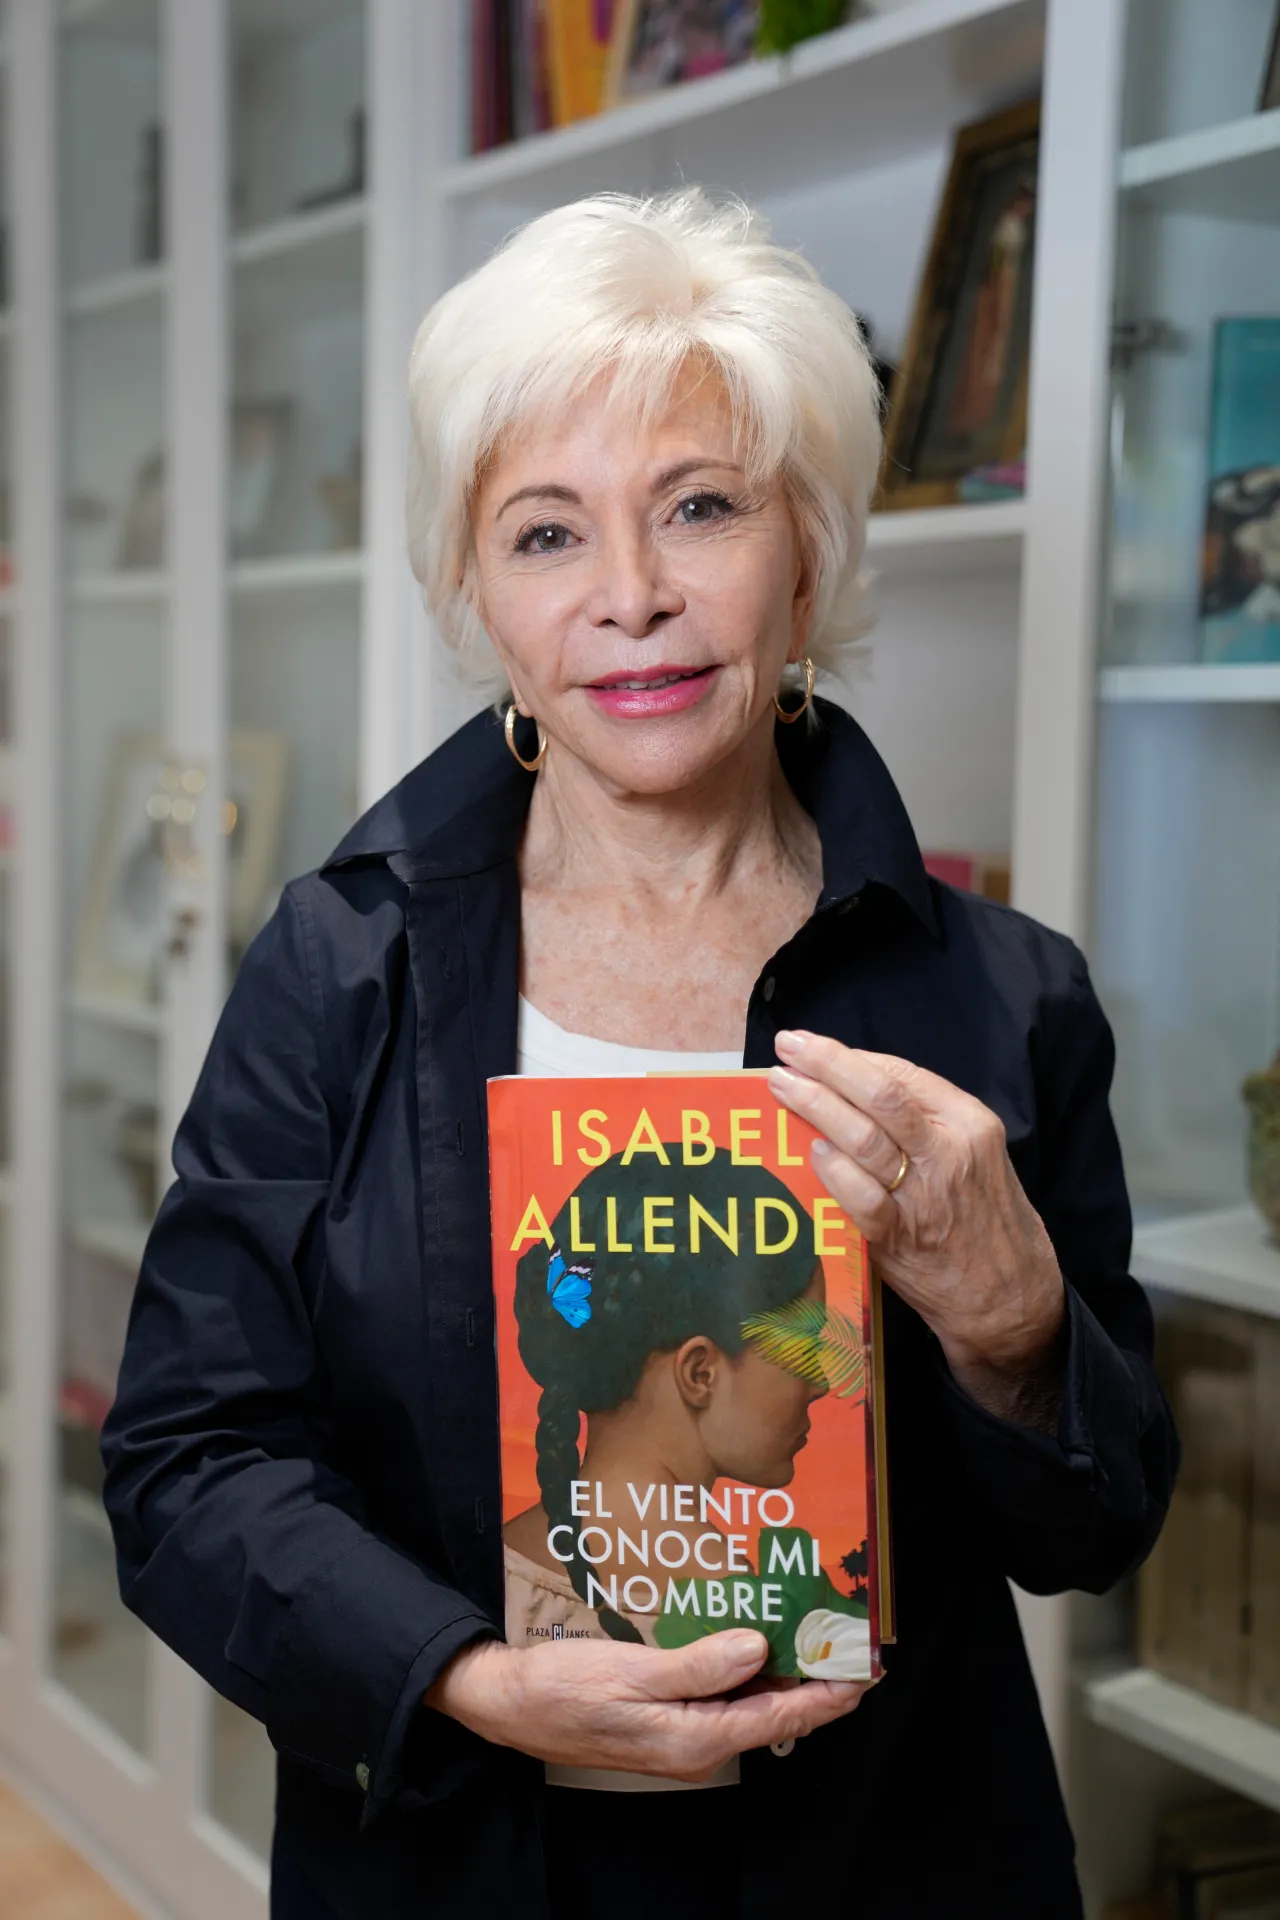 All about Isabel Allende's novels